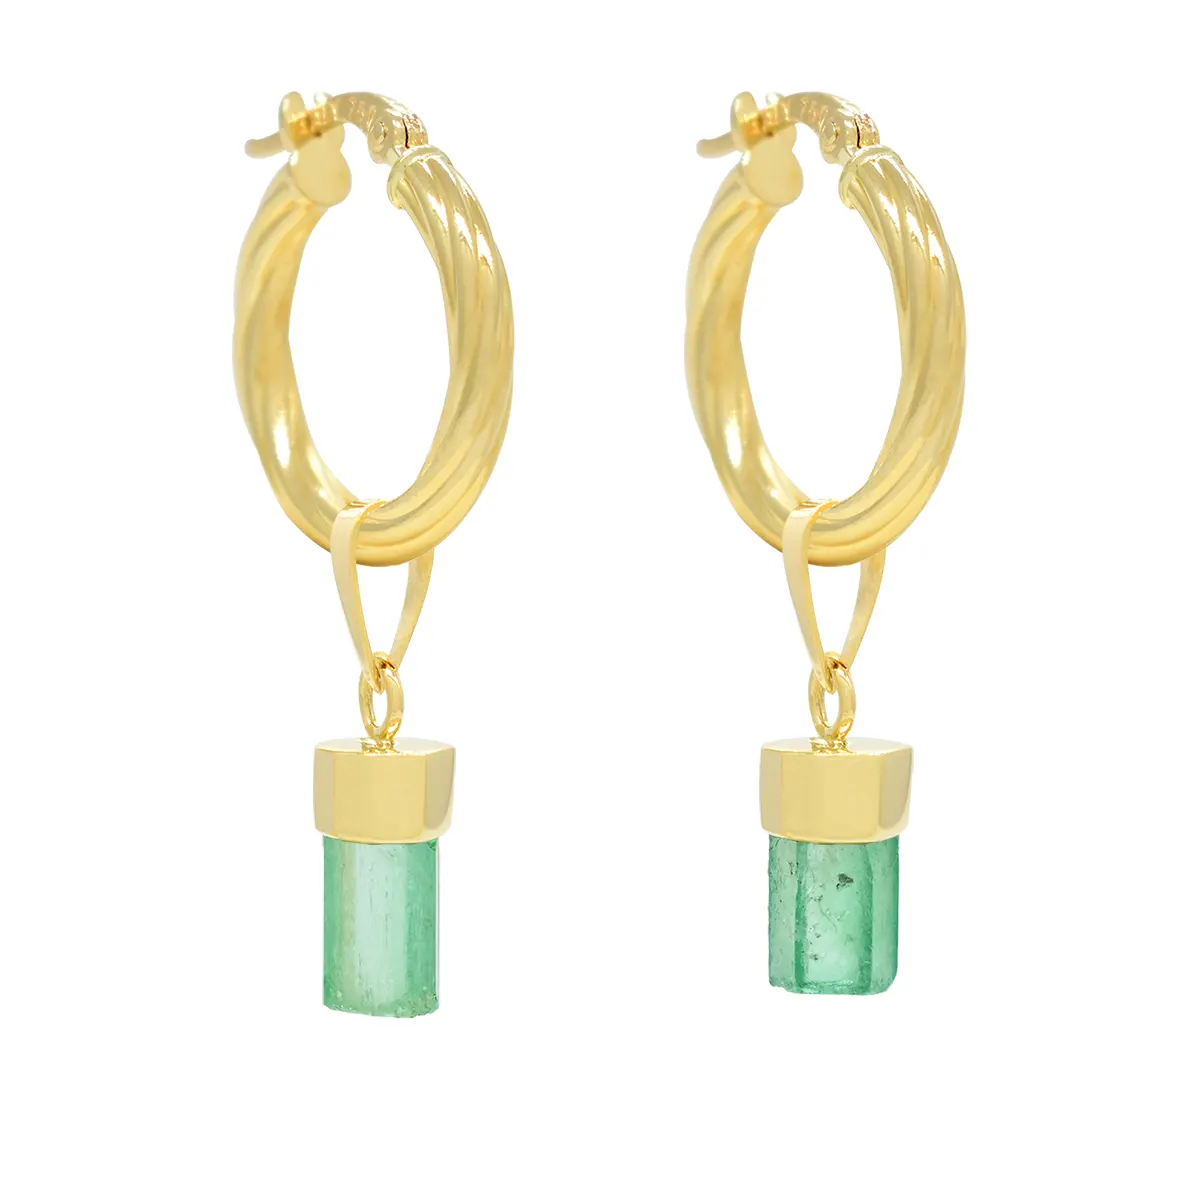 Uncut Natural Emeralds in 18K Gold Hoop Earrings